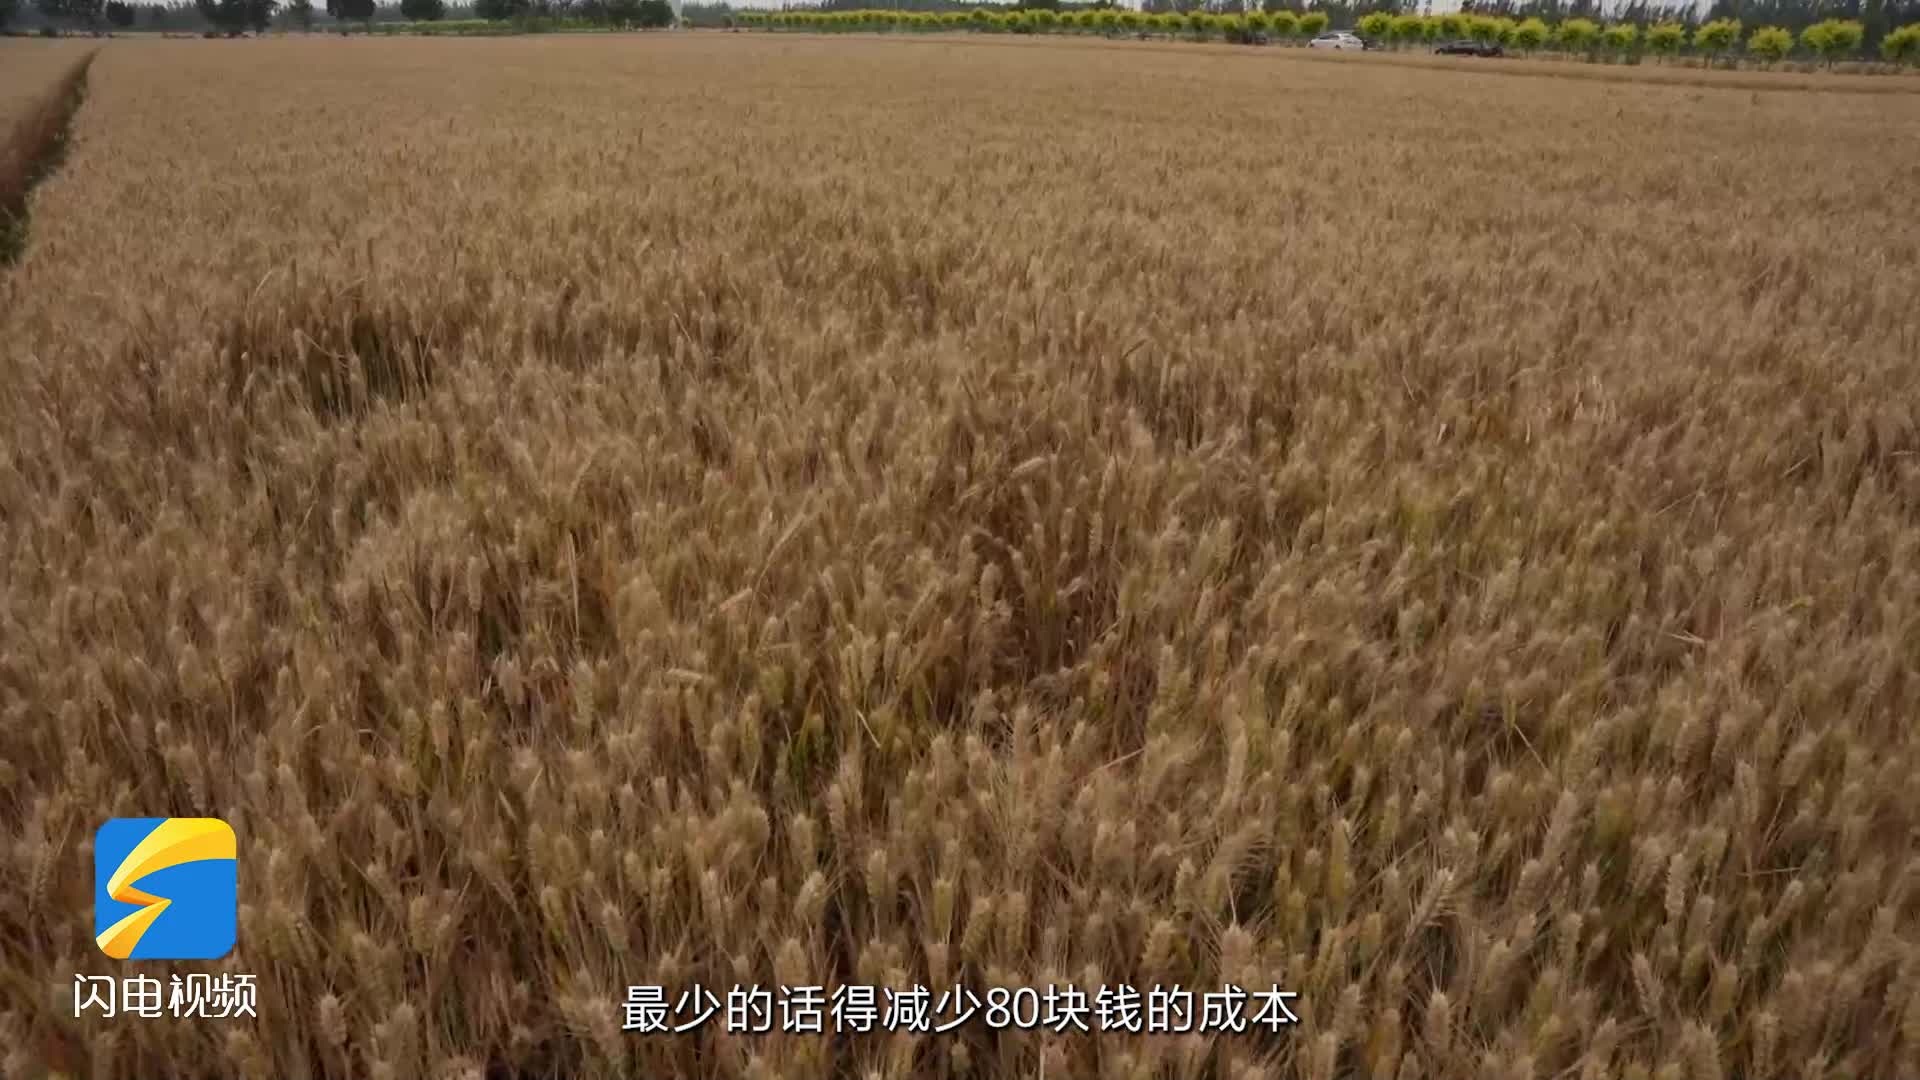 阳信：“废沼液”变“农家宝” 小麦增产促丰收